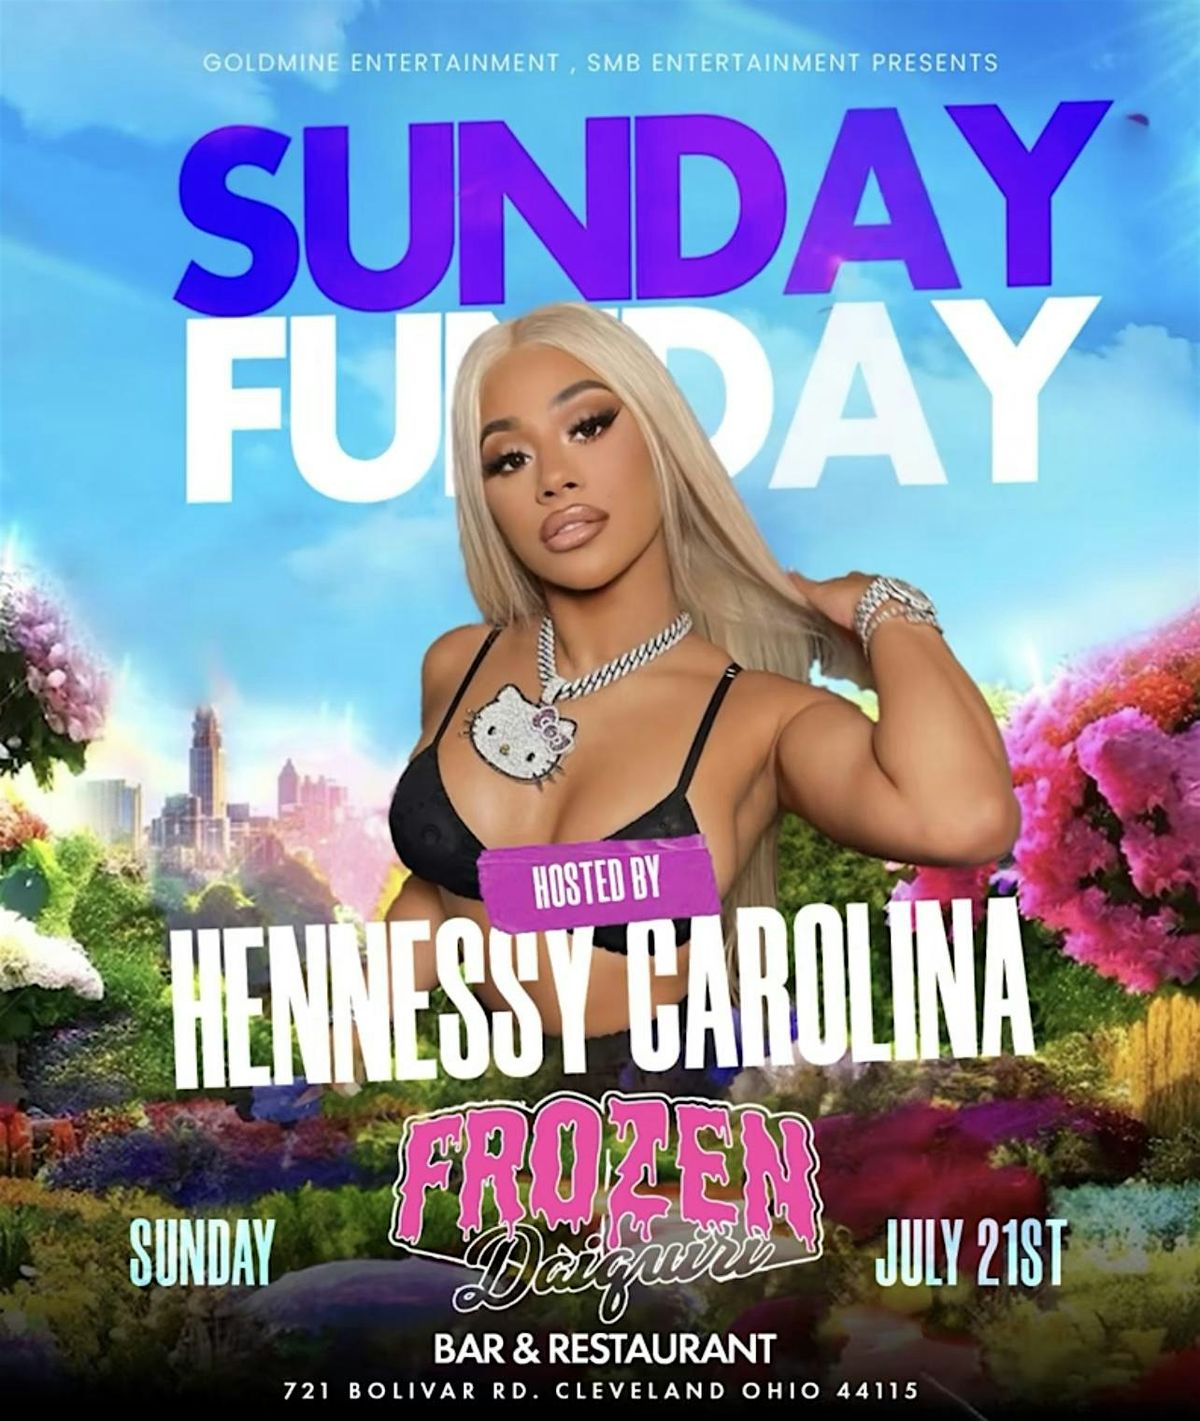 Sunday FunDay Day Party hosted by Hennessy Carolina